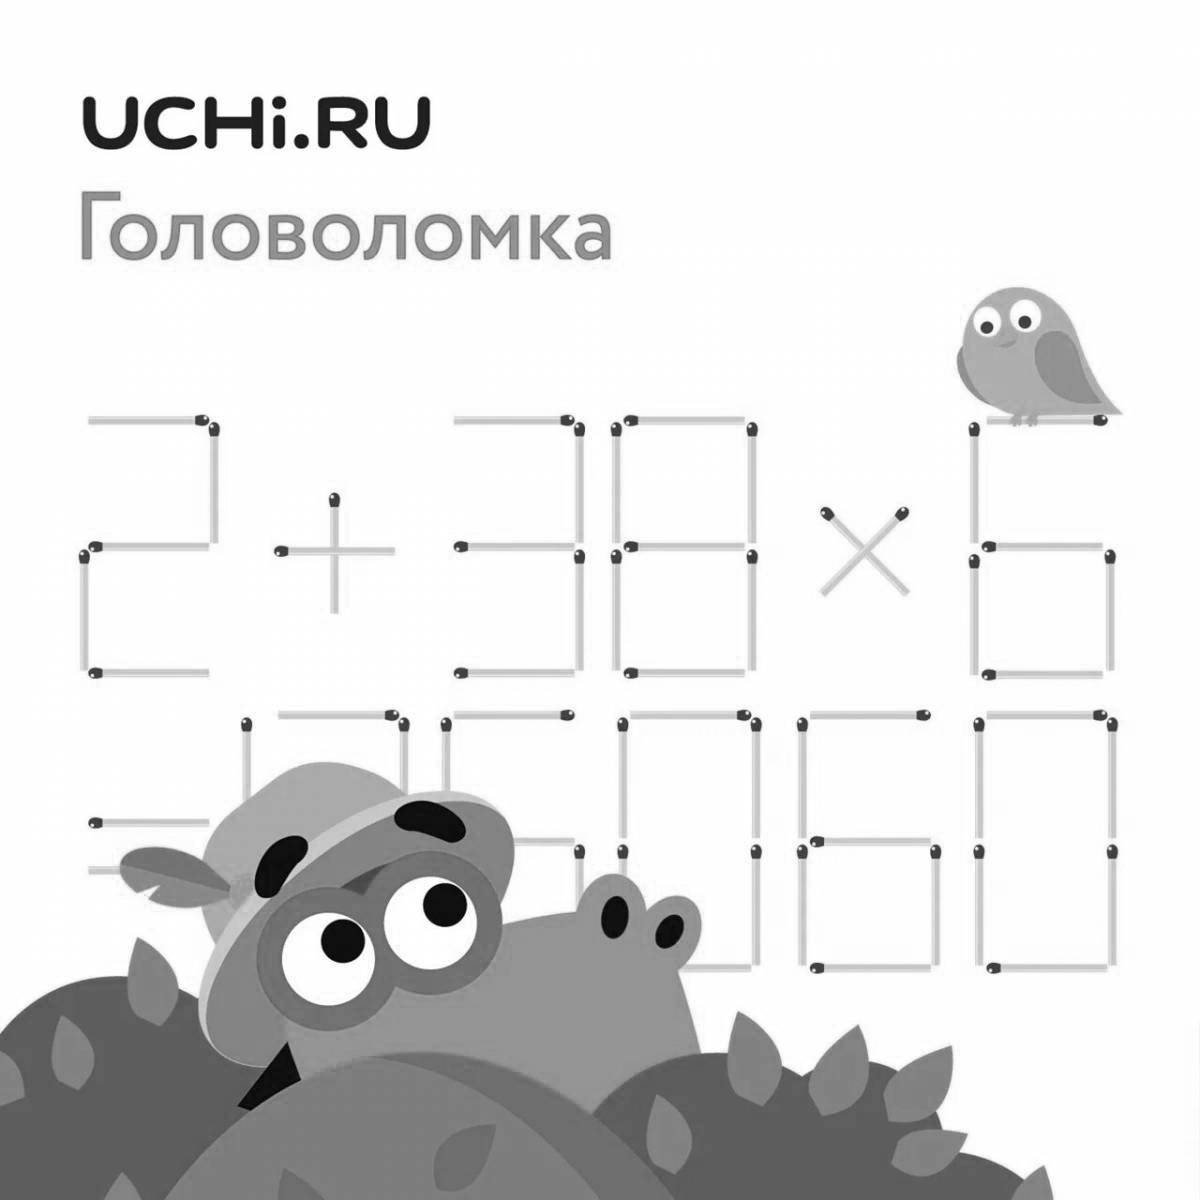 Zavriki learn ru #3